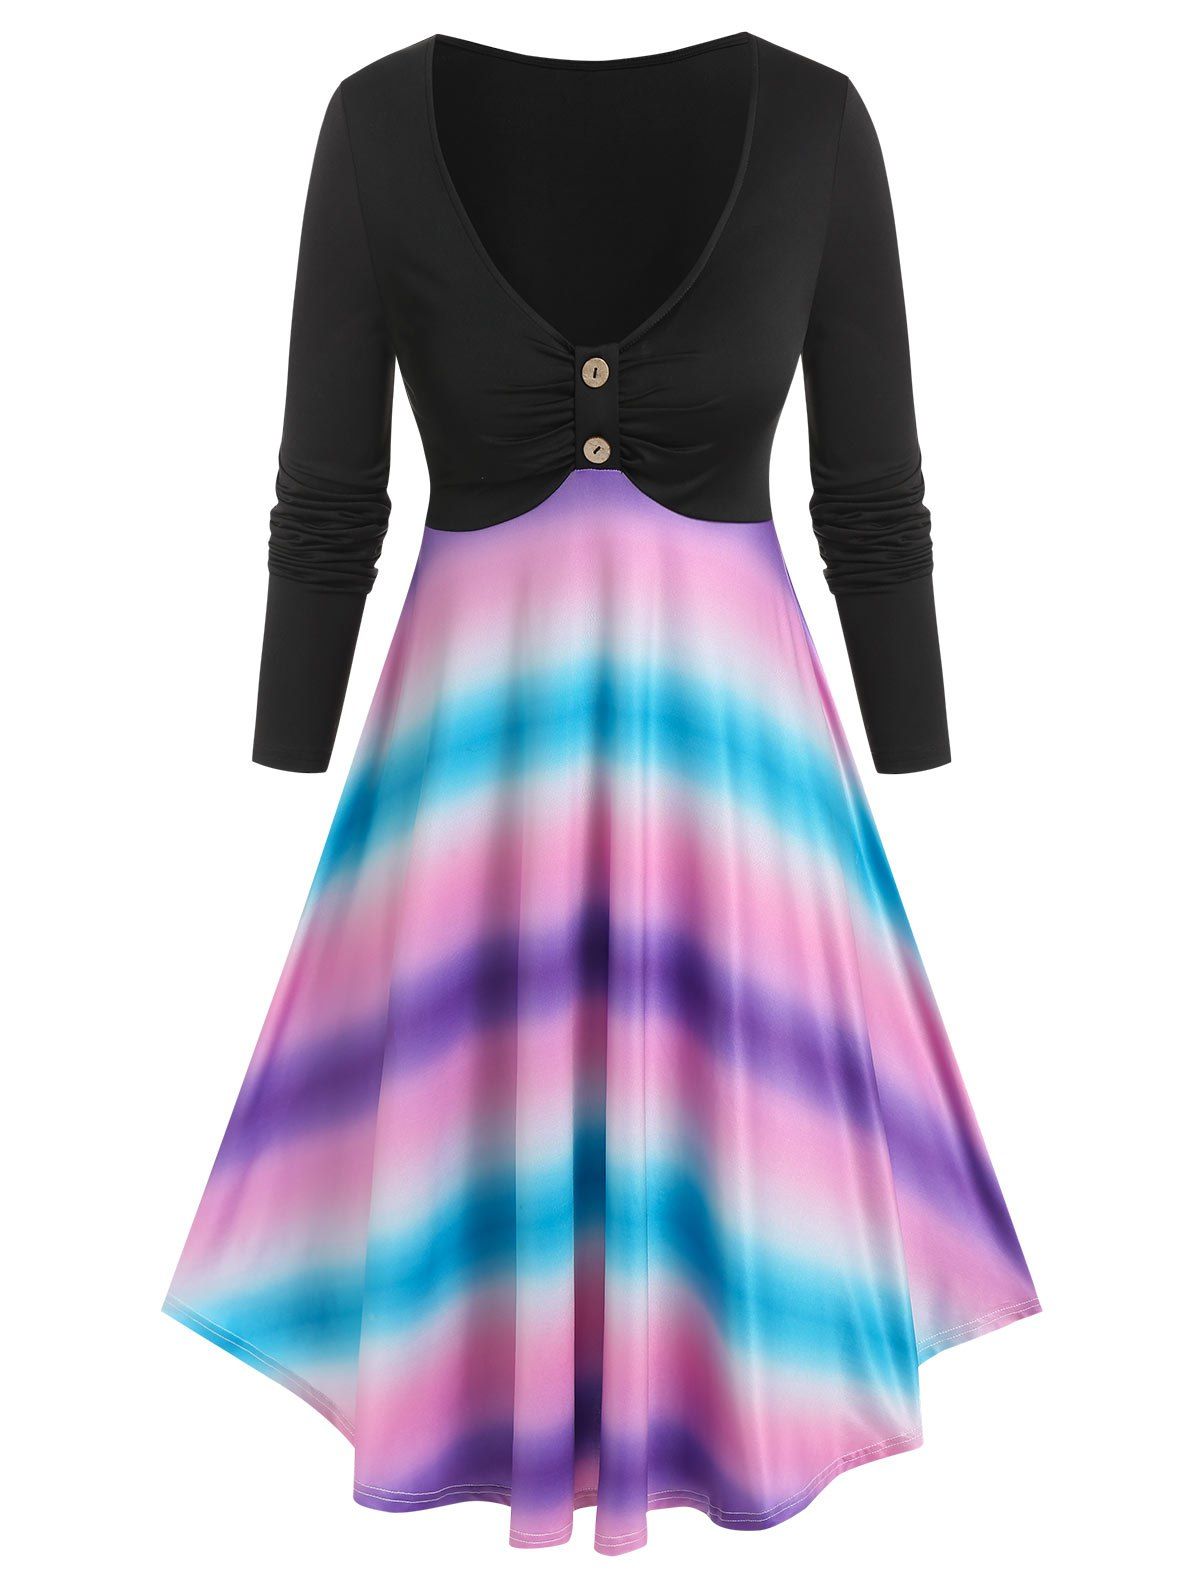 Tie Dye Print Long Sleeve Dress - multicolor XL